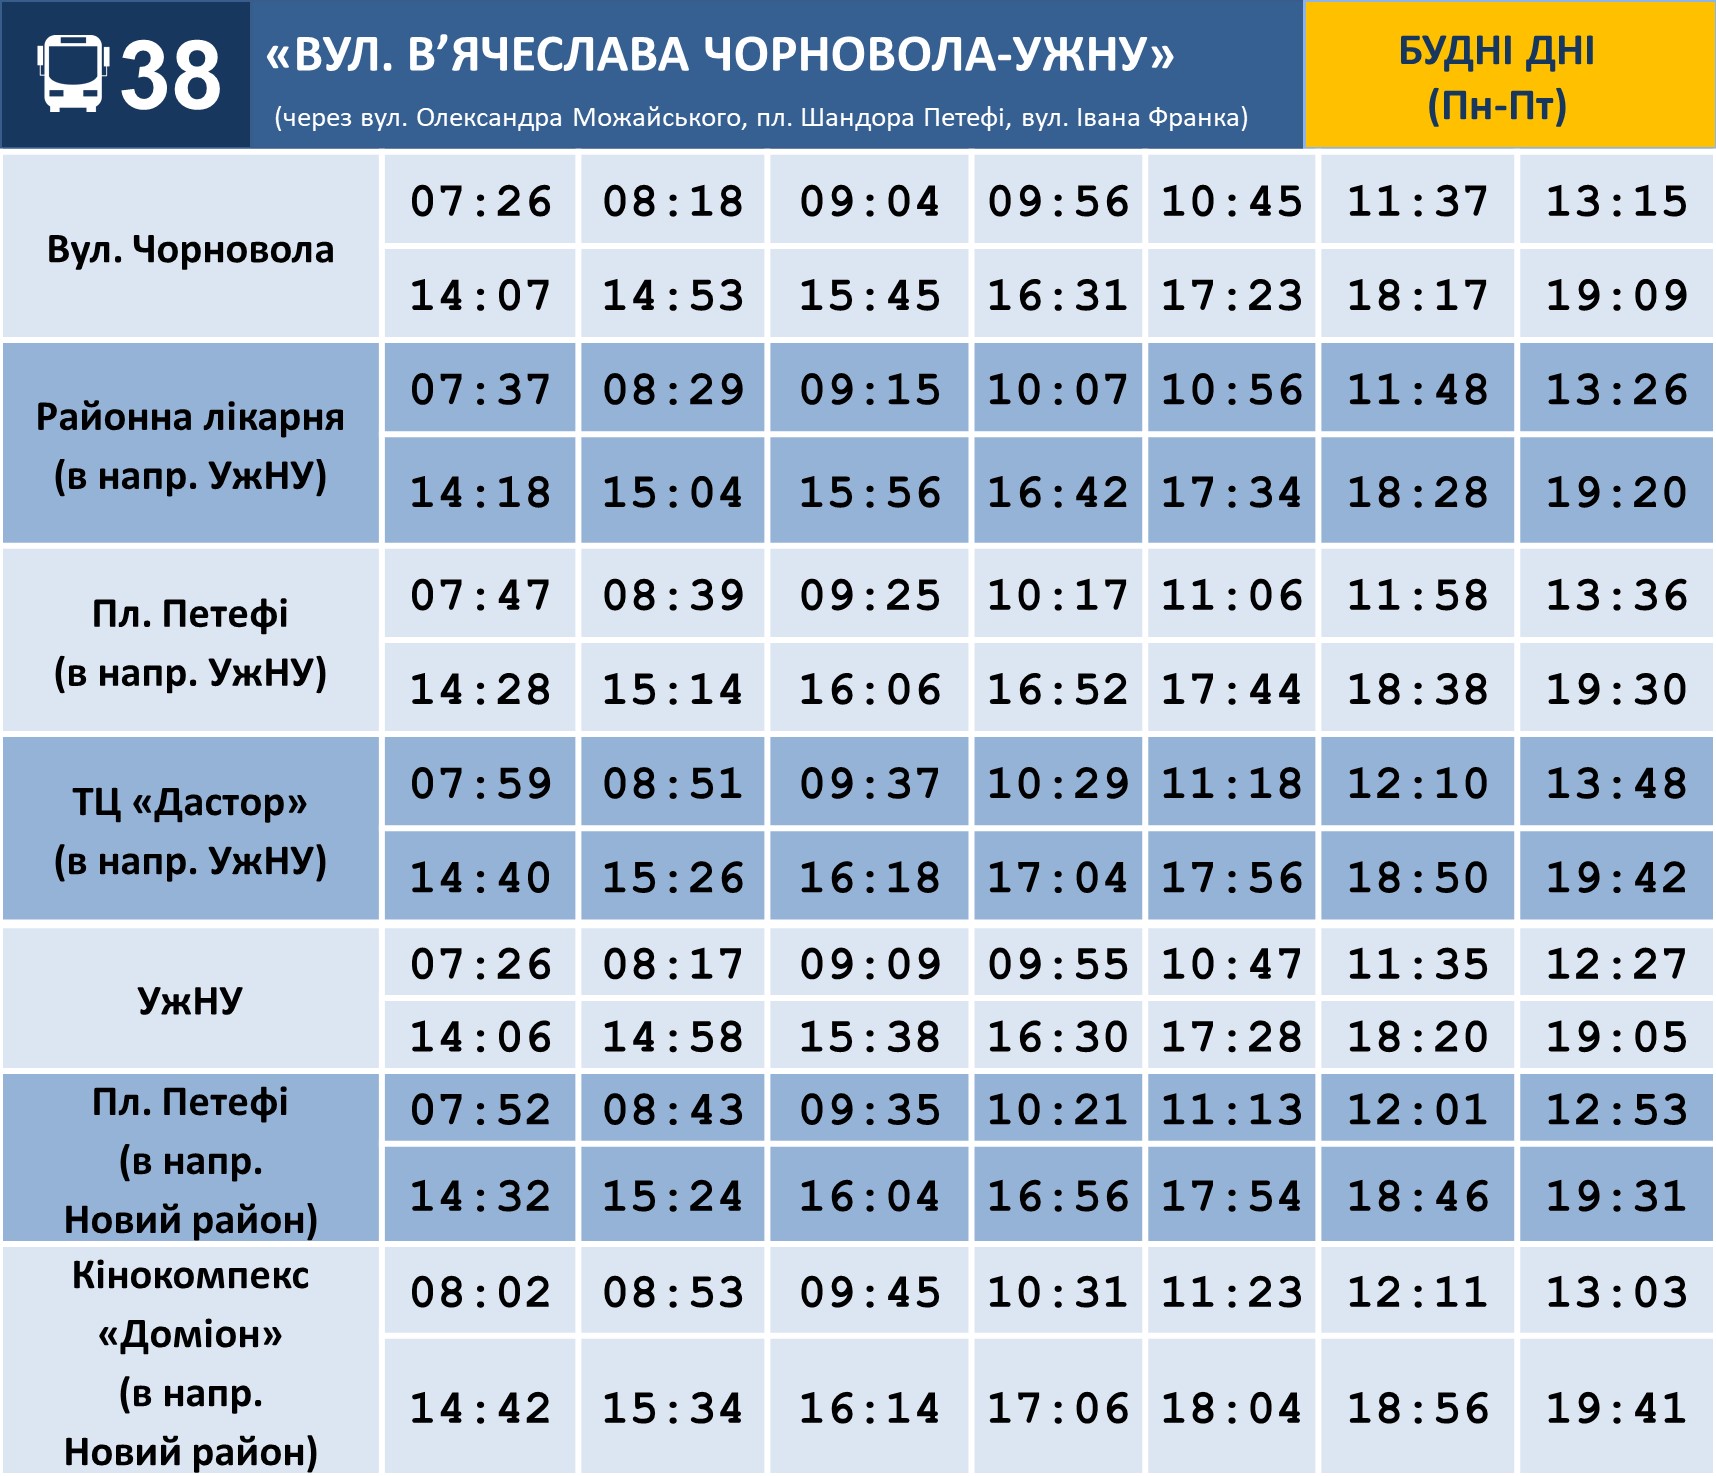 Інформація про матеріально-технічне забезпечення засобами захисту комунальних медзакладів Ужгорода на 13 квітня